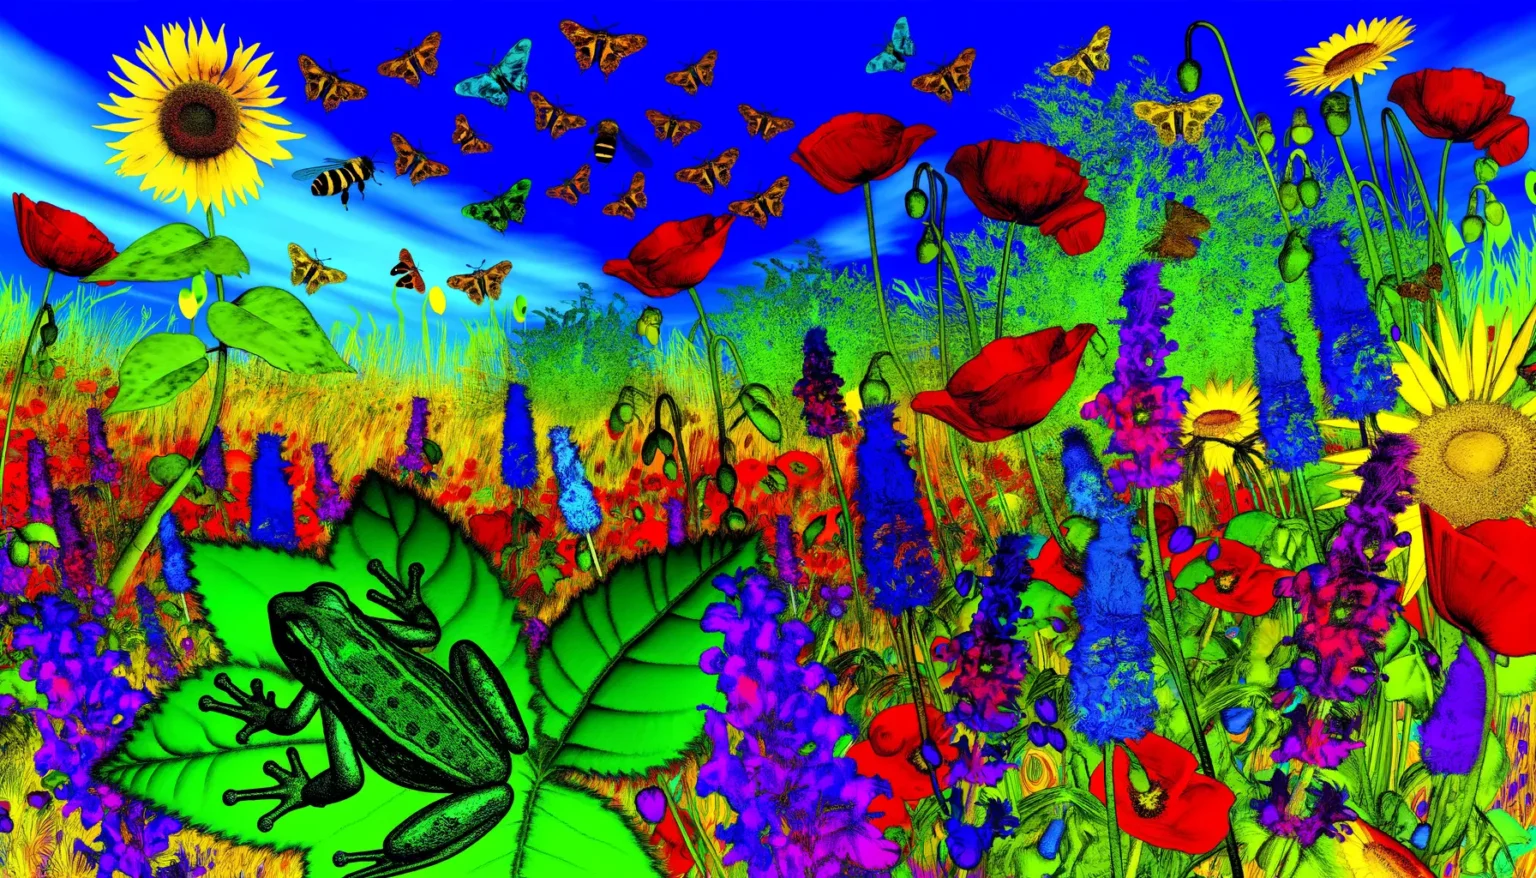 Ein farbenfrohes, stilisiertes digitales Kunstwerk, das eine bunte Wiese mit lebhaften roten Mohnblumen, Löwenzahn, Sonnenblumen und anderen Blumen zeigt, begleitet von Schmetterlingen und einer Biene, die durch die Szene fliegen. Im Vordergrund ist eine überdimensionale, grüne Frösche-Silhouette auf einem Blatt zu sehen. Der Hintergrund ist ein strahlender blauer Himmel mit leichten Wolkenstreifen.